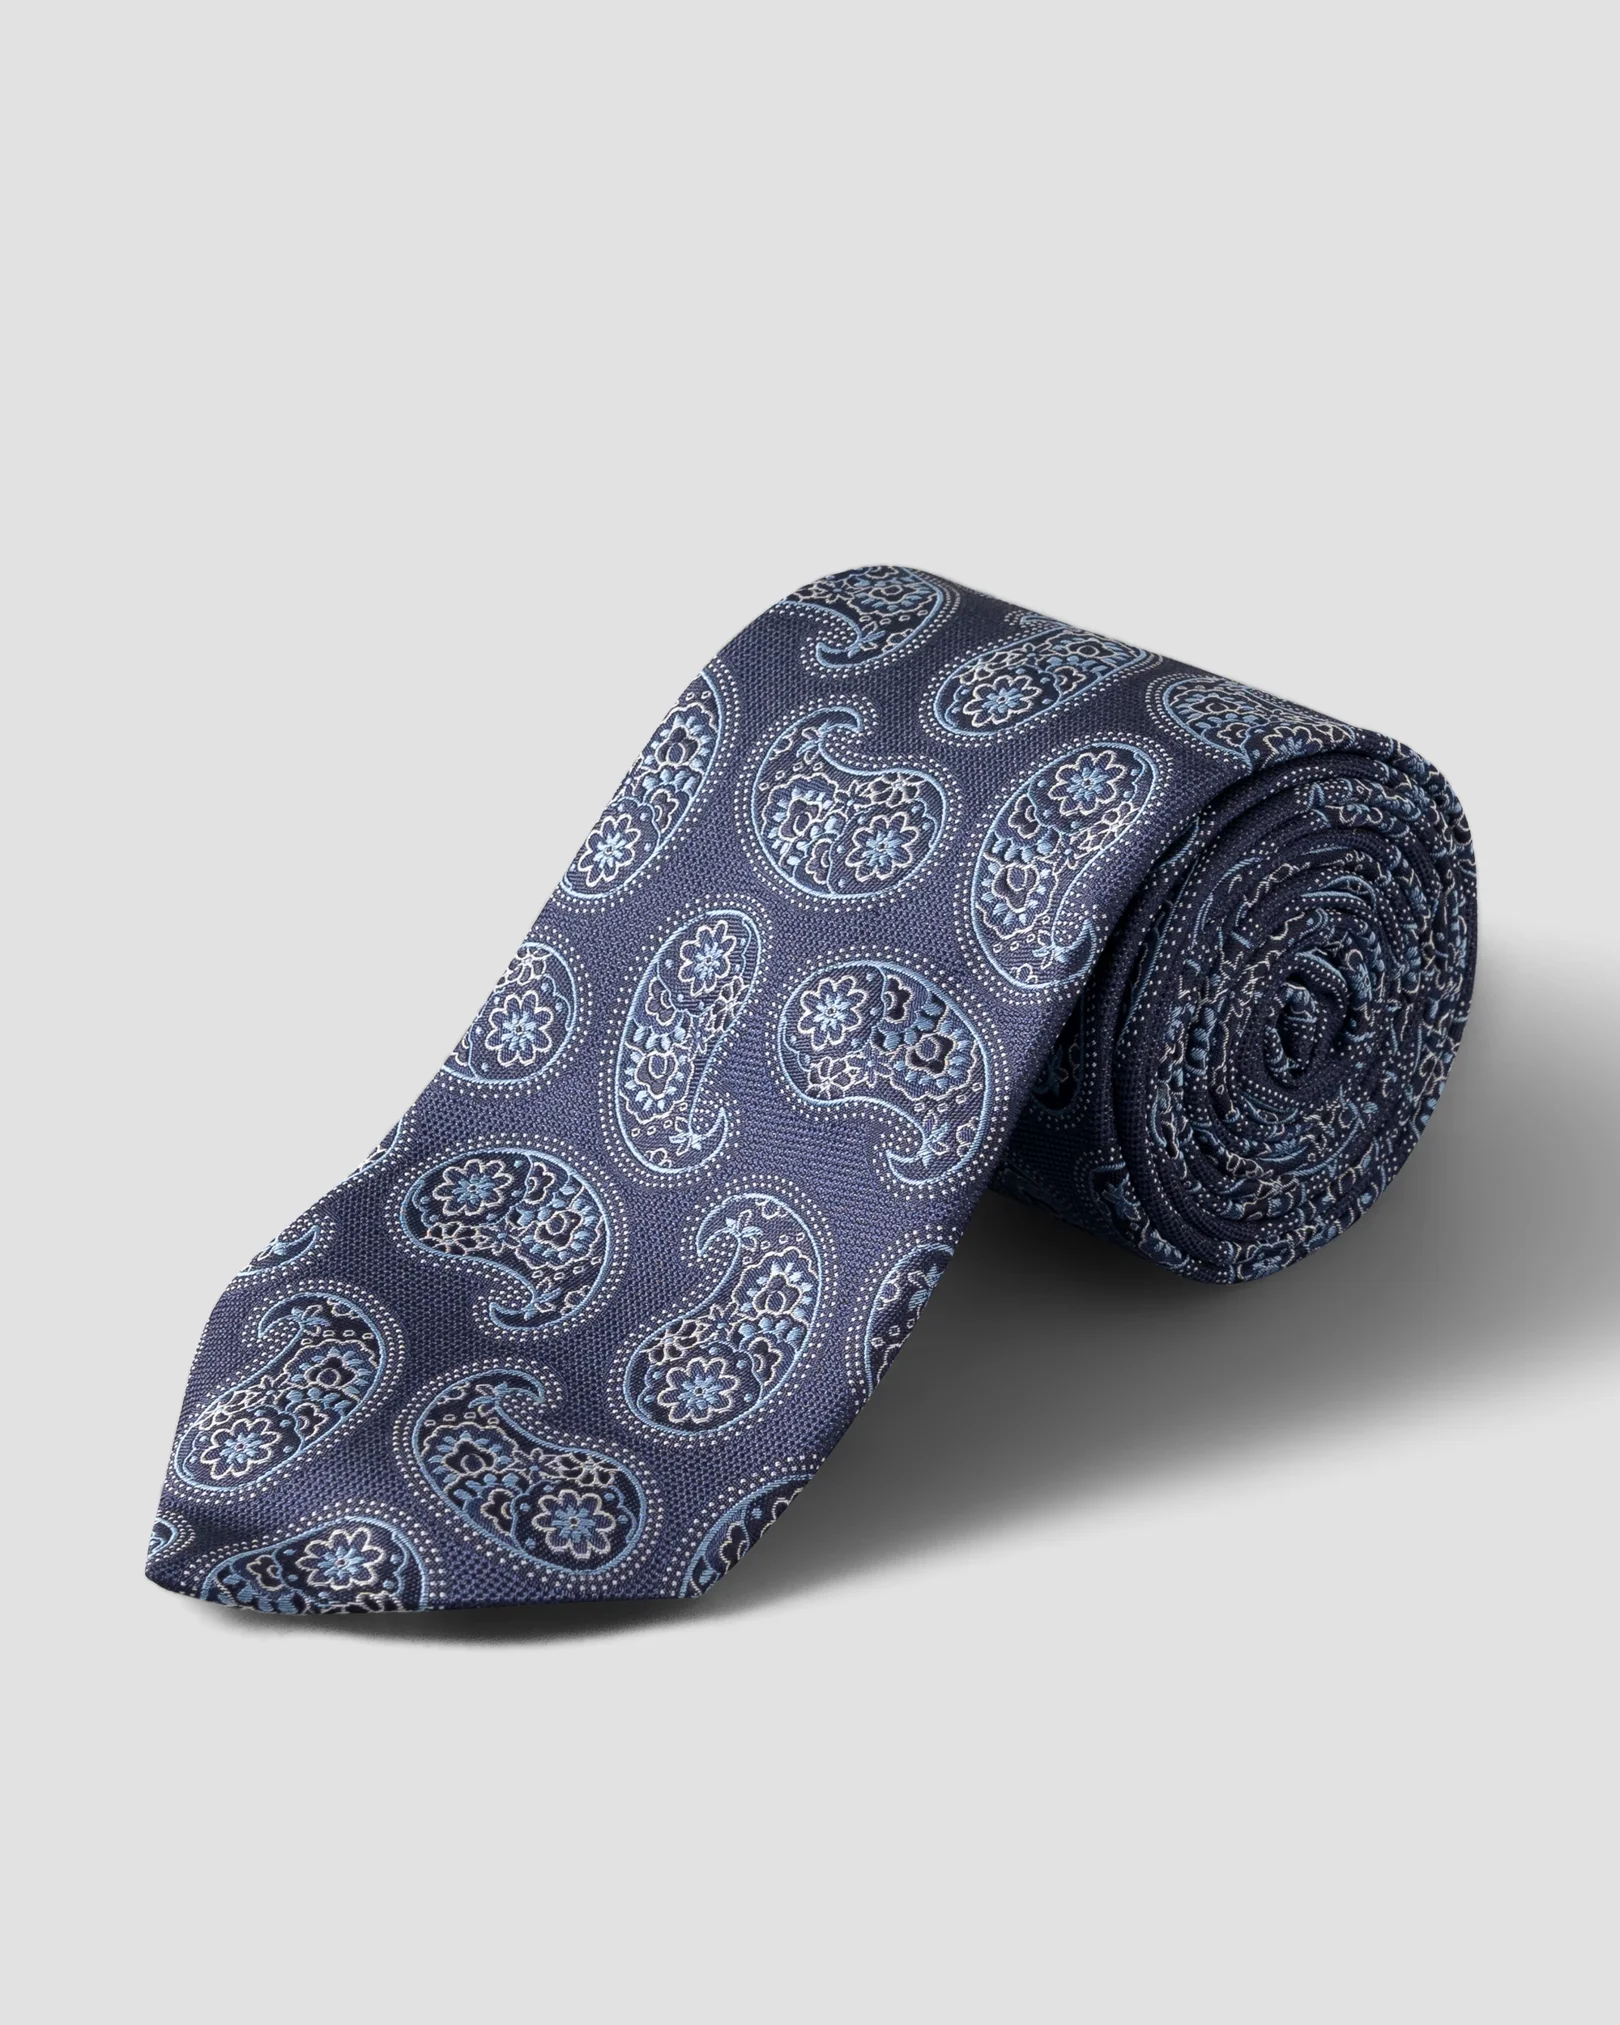 Cravate en soie micro-imprimé cachemire bleu marine